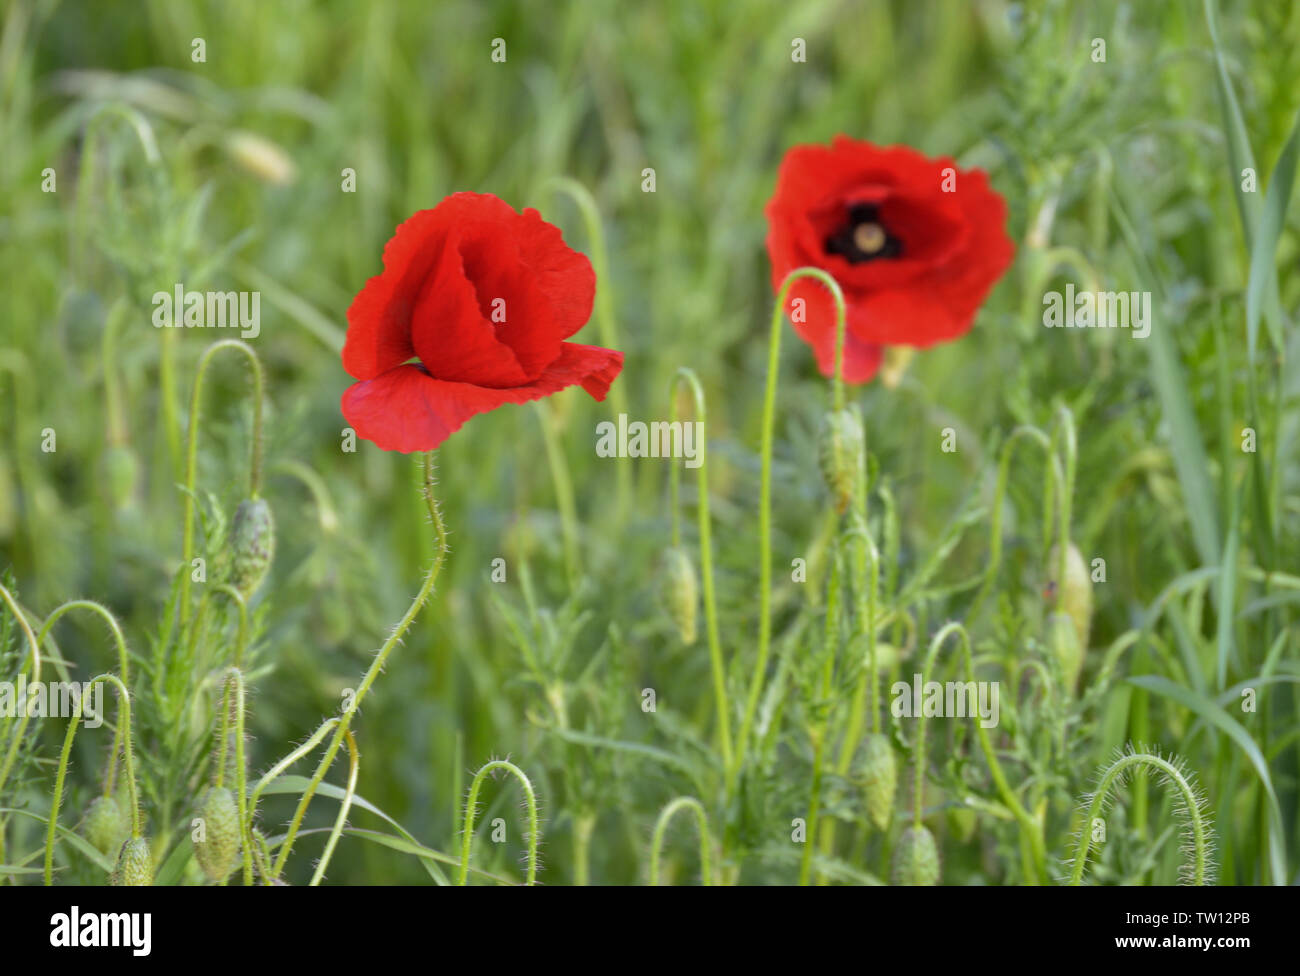 Poppy flowers in field Stock Photo